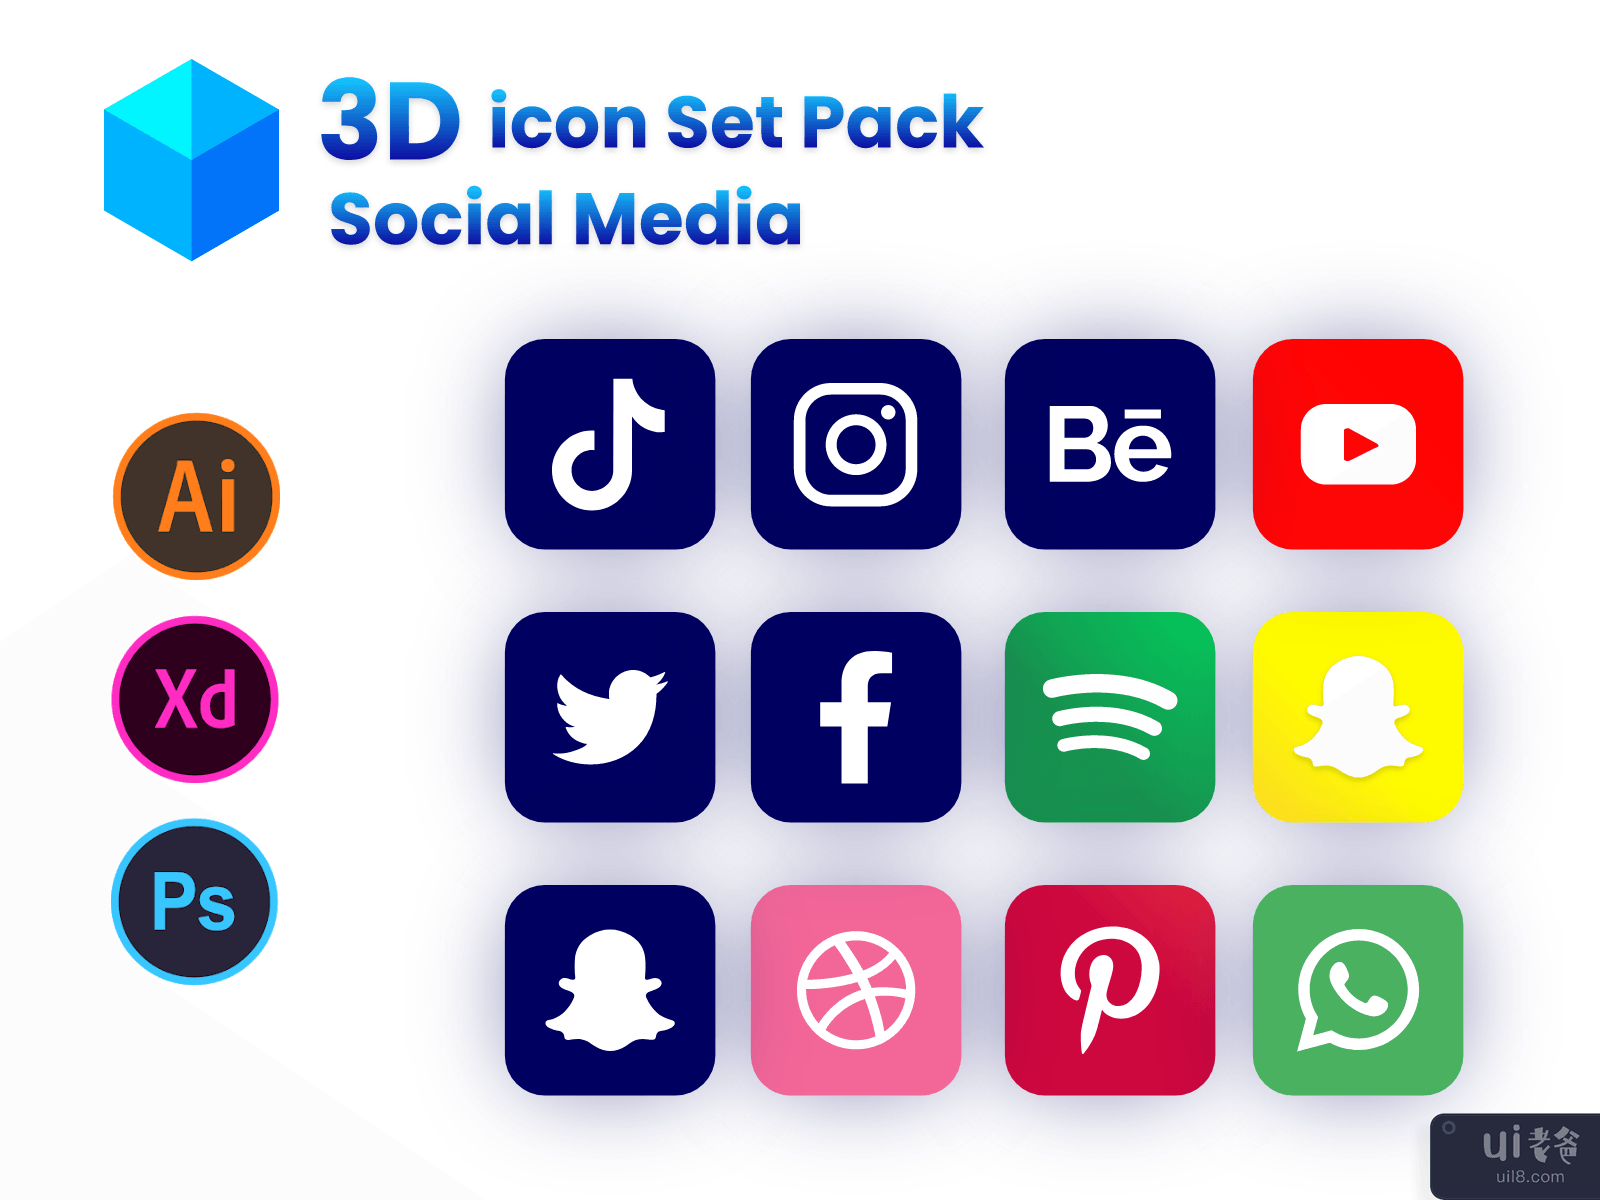 社交媒体 3D 图标集合-彩色图标包(Social Media 3D Icon Collection - Colorful Icon Pack)插图